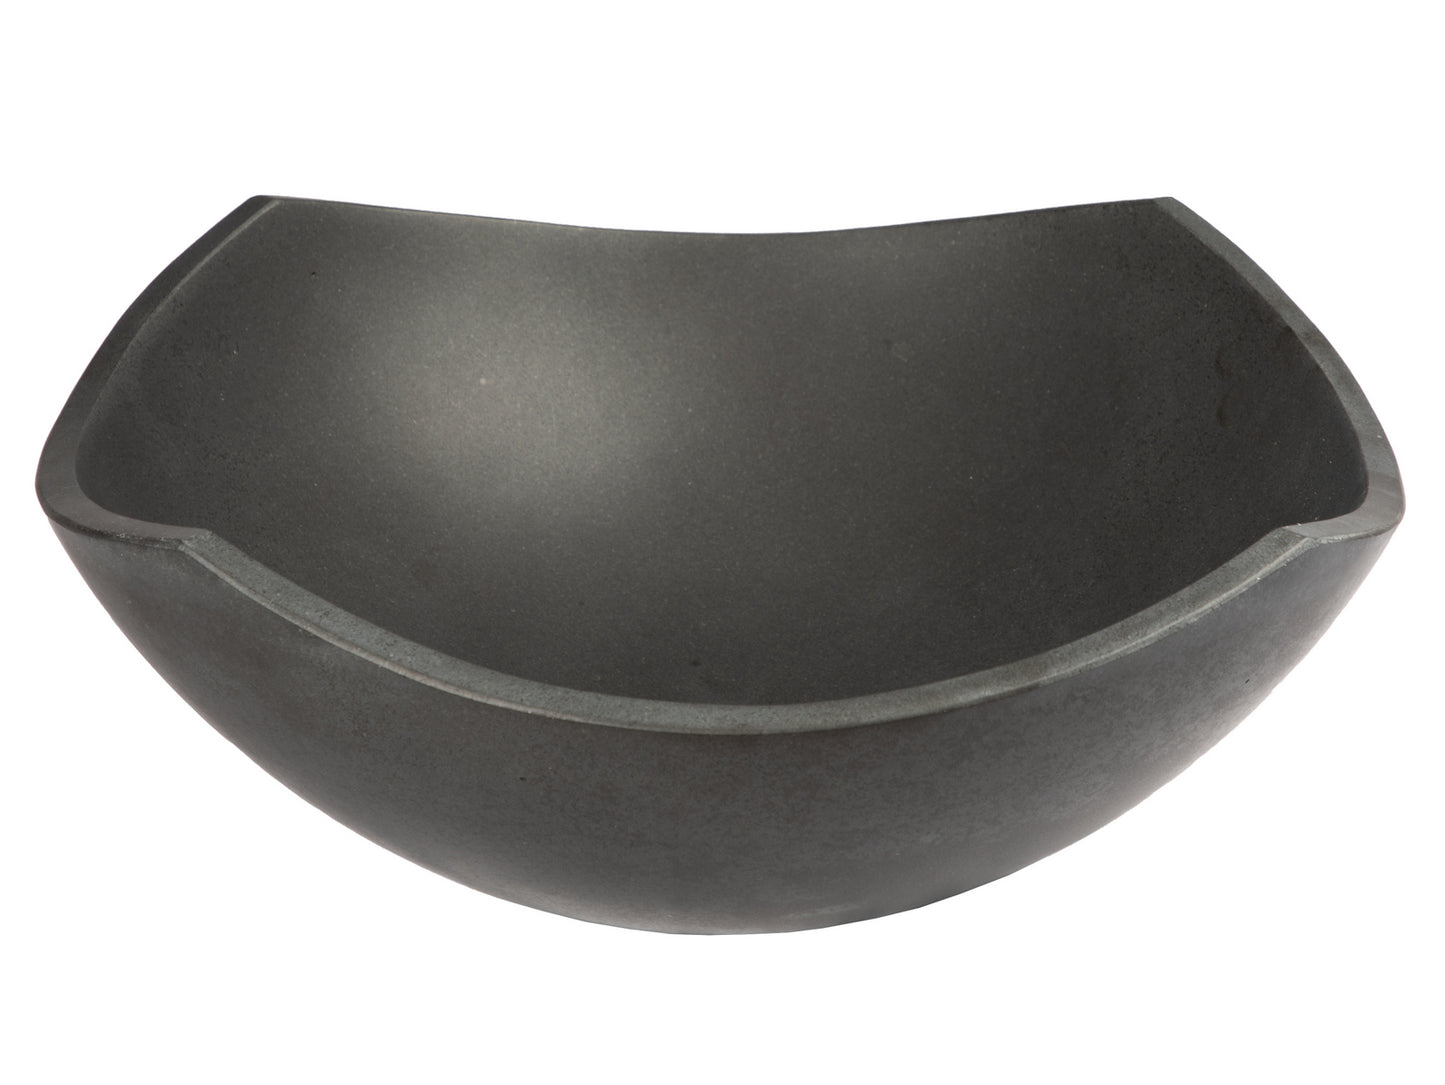 Arched Edges Bowl Sink - Black Lava Stone